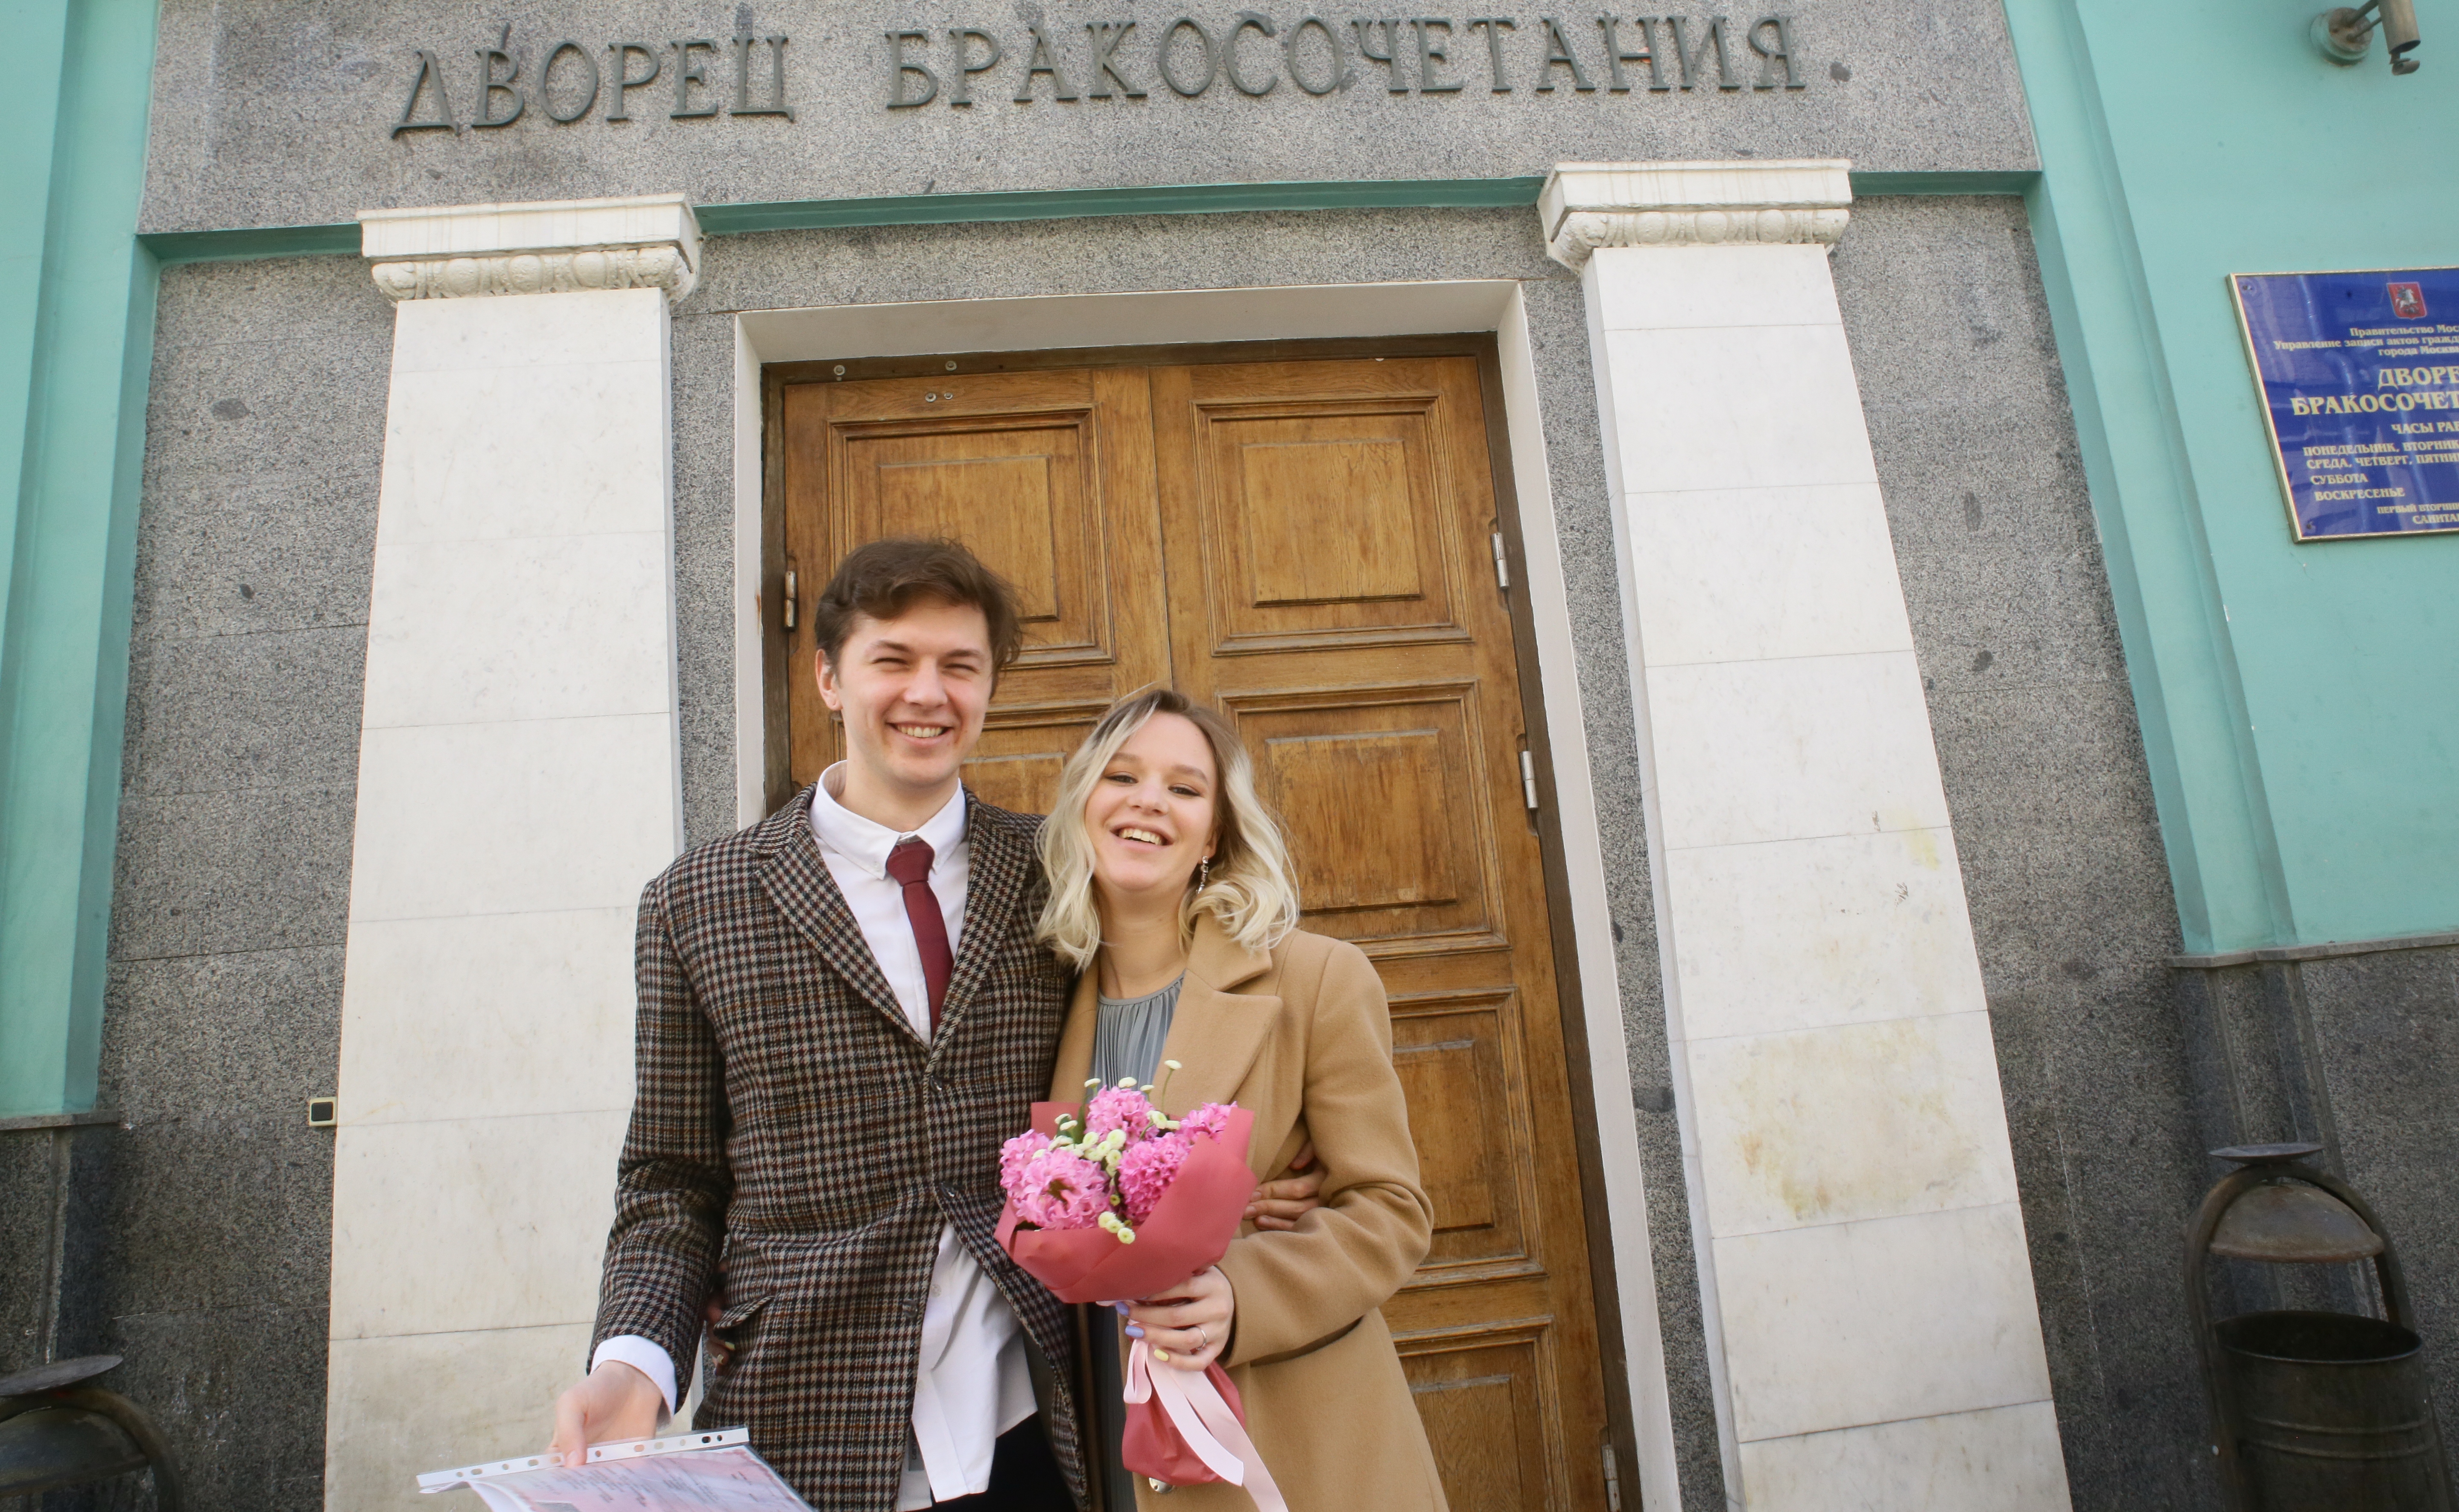 дворец бракосочетания 1 москва официальный сайт